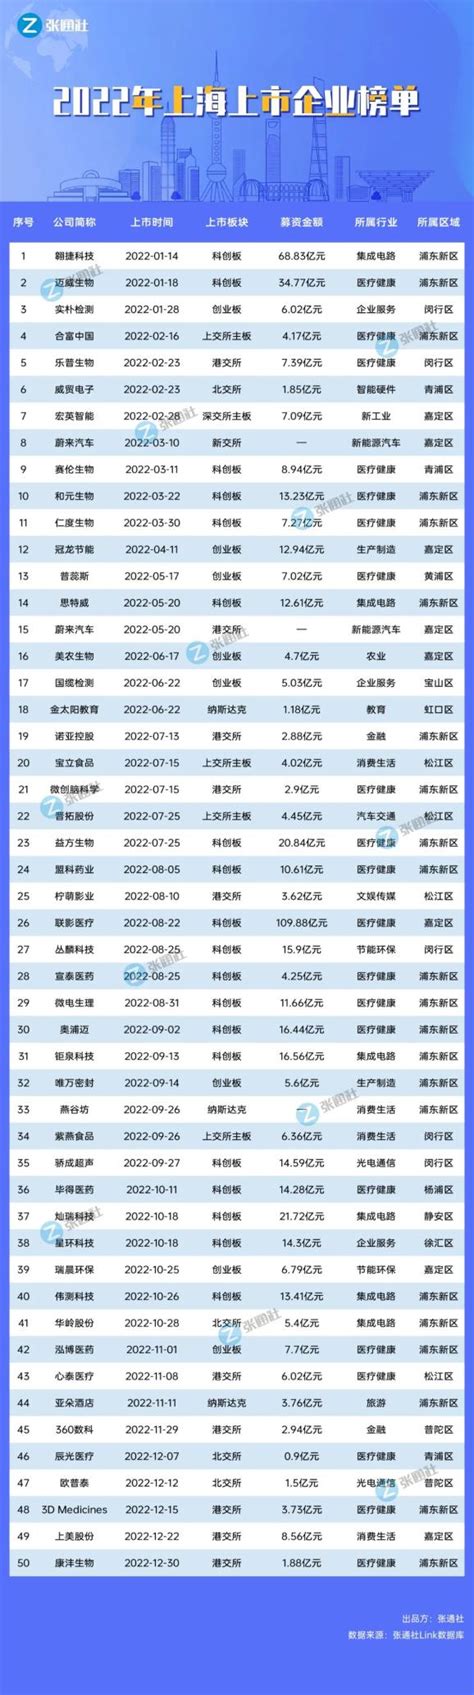 上海区榜单